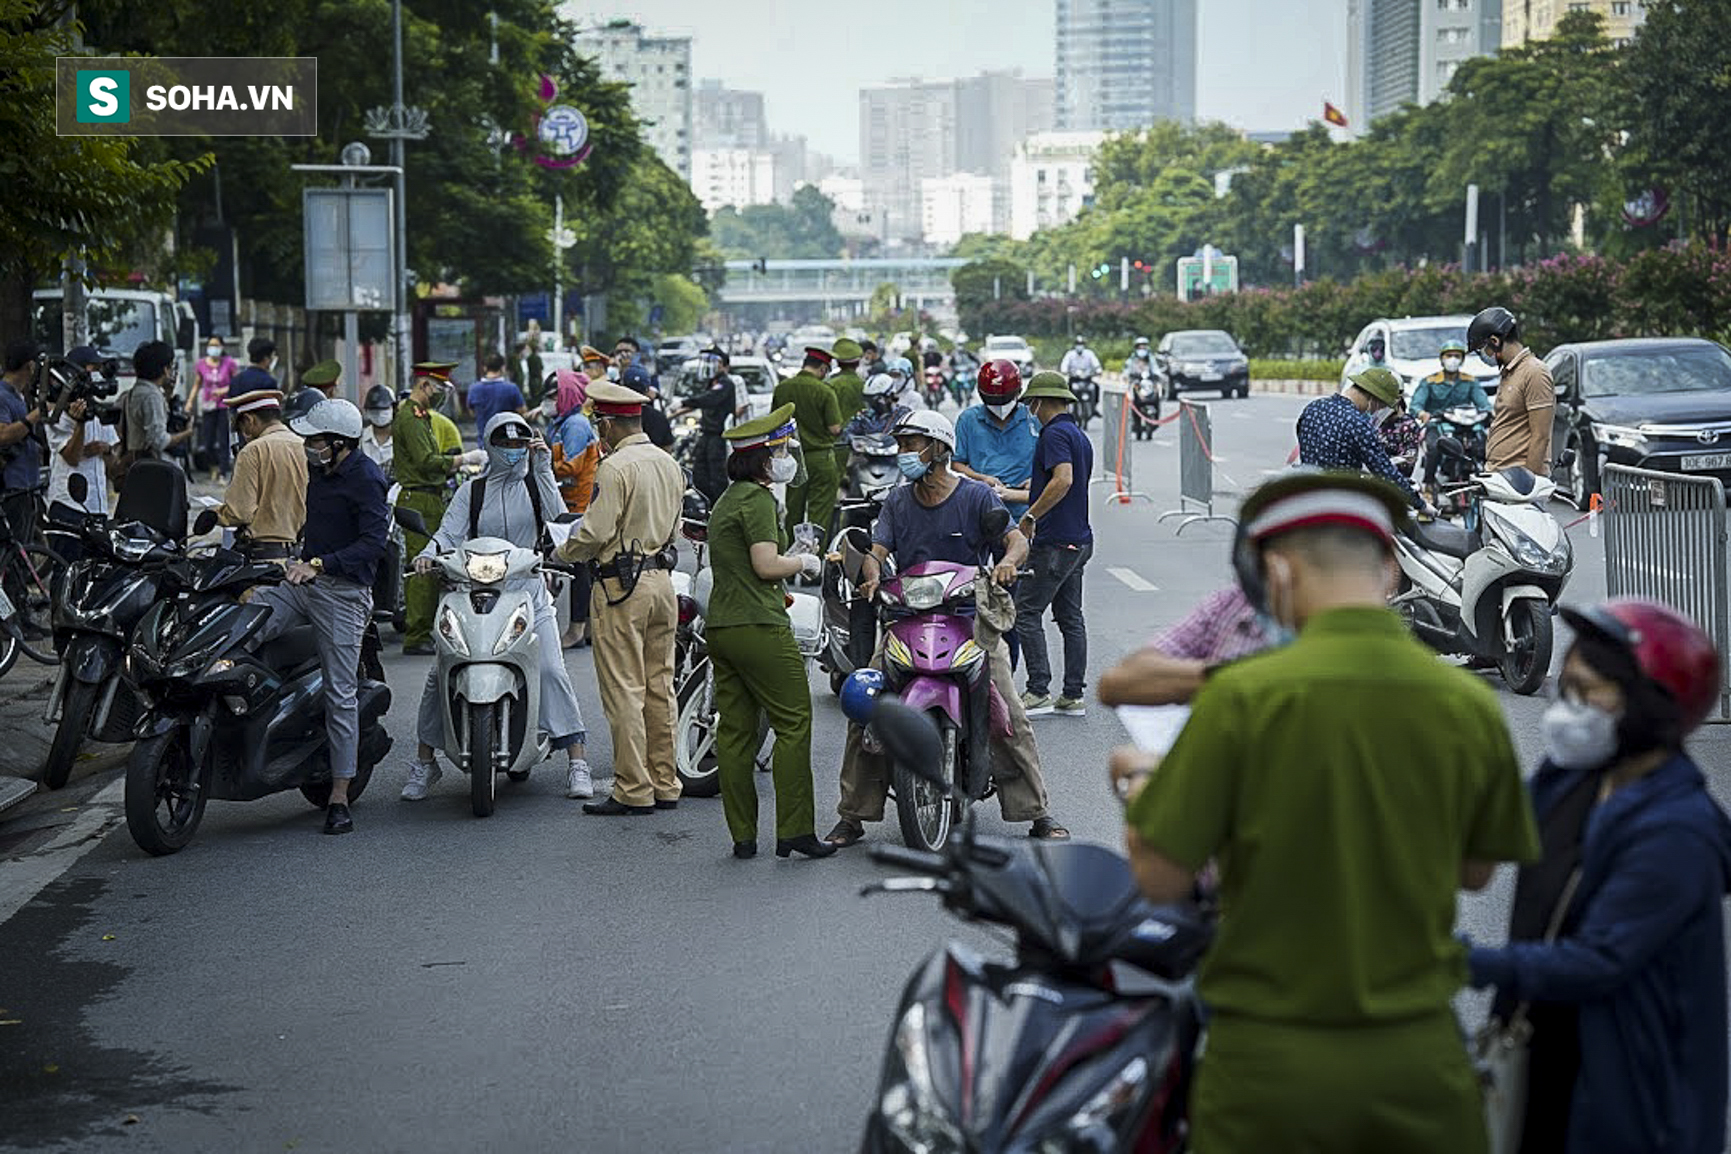 Tổ công tác đặc biệt kiểm tra người lưu thông trong nội đô Hà Nội, có điểm ùn ứ, xe máy quay đầu bỏ chạy - Ảnh 15.